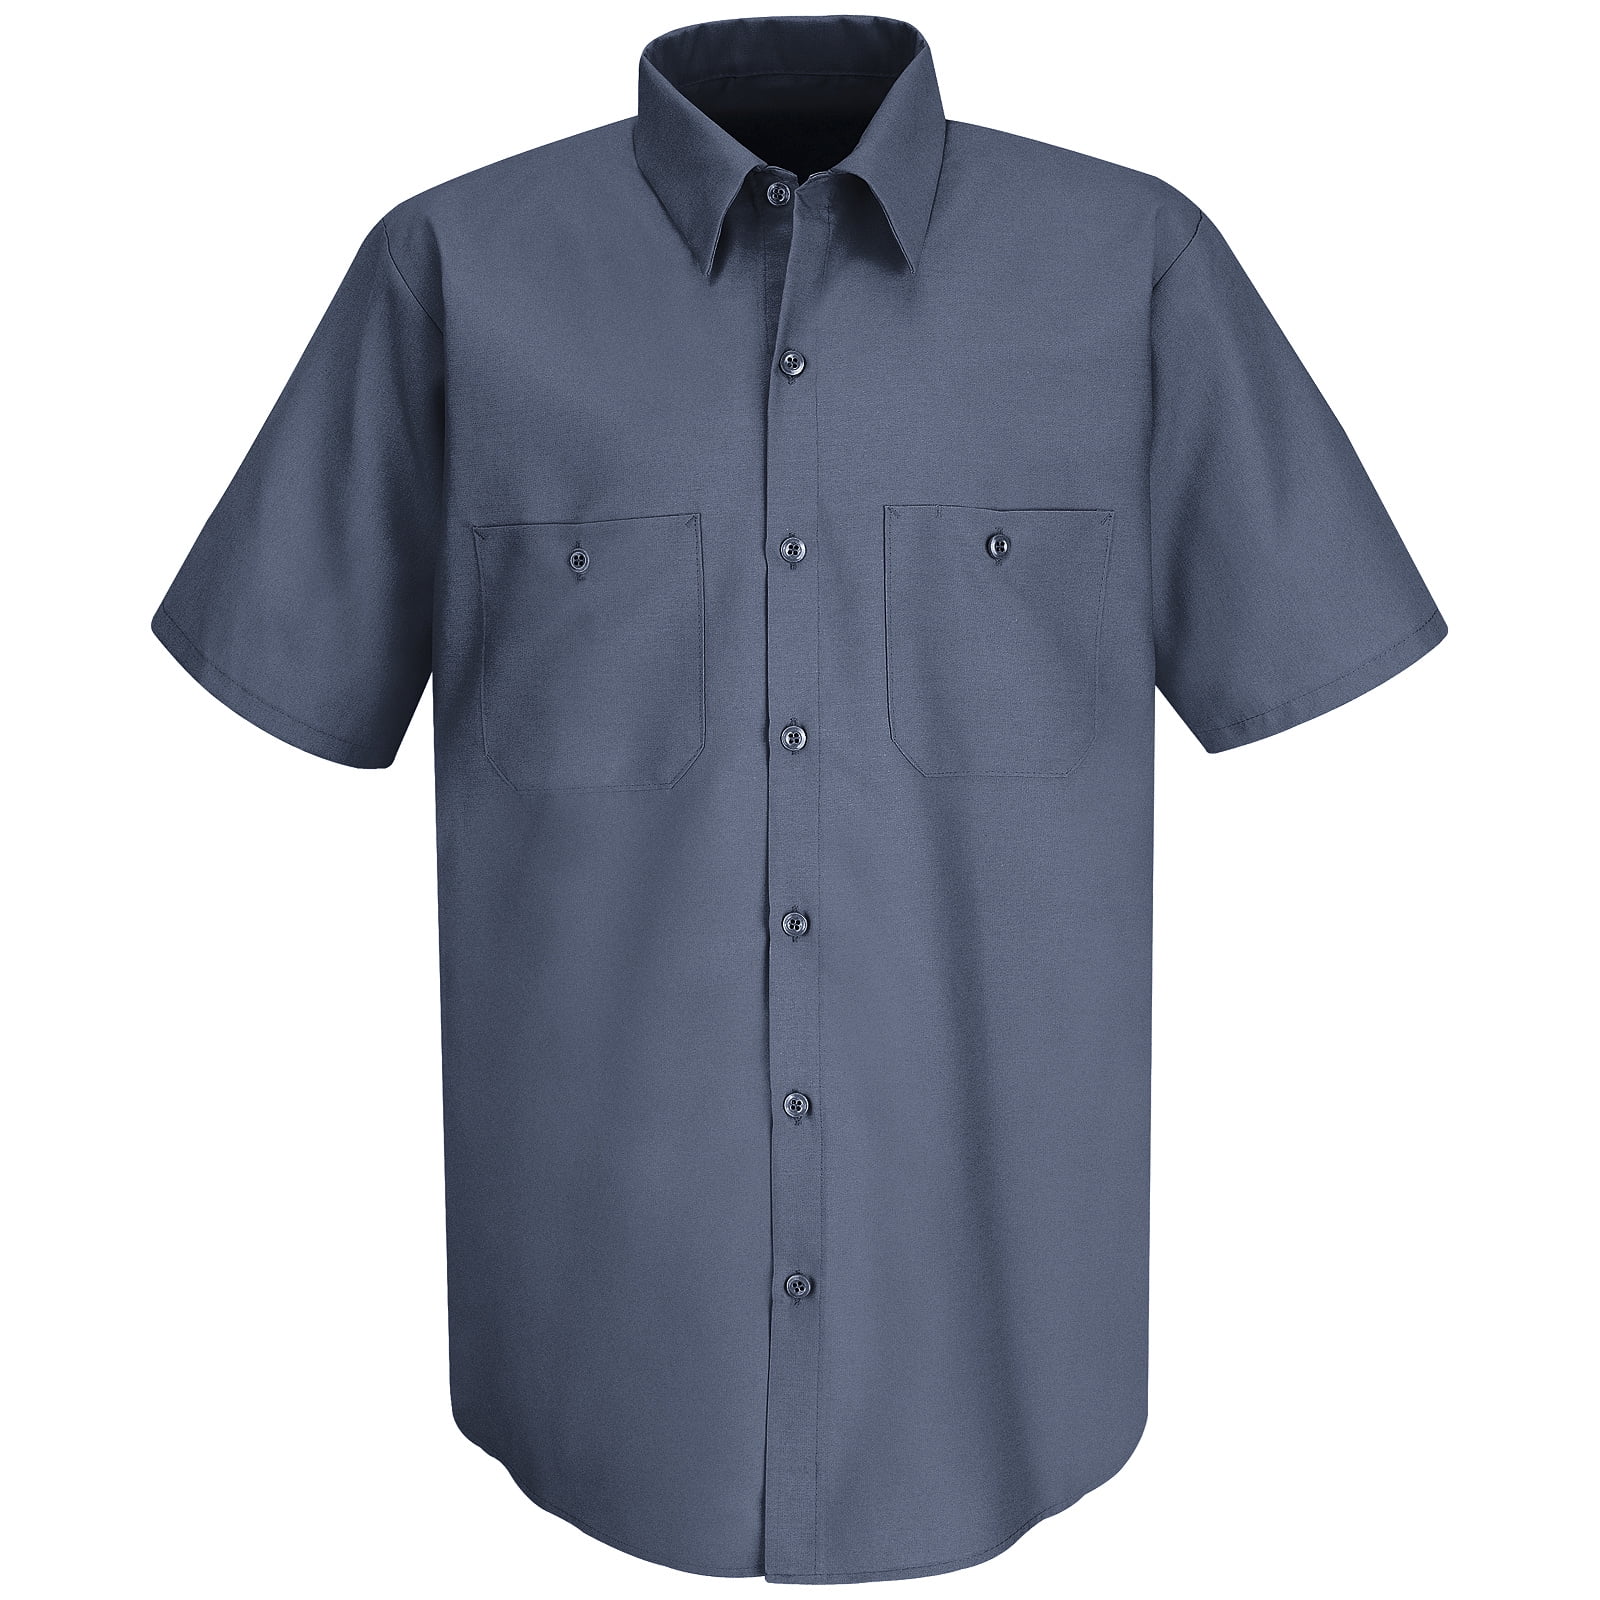 JB's wear Cotton Lightweight Cool Comfort Short Sleeve Work Shirt with UPF 50+ 